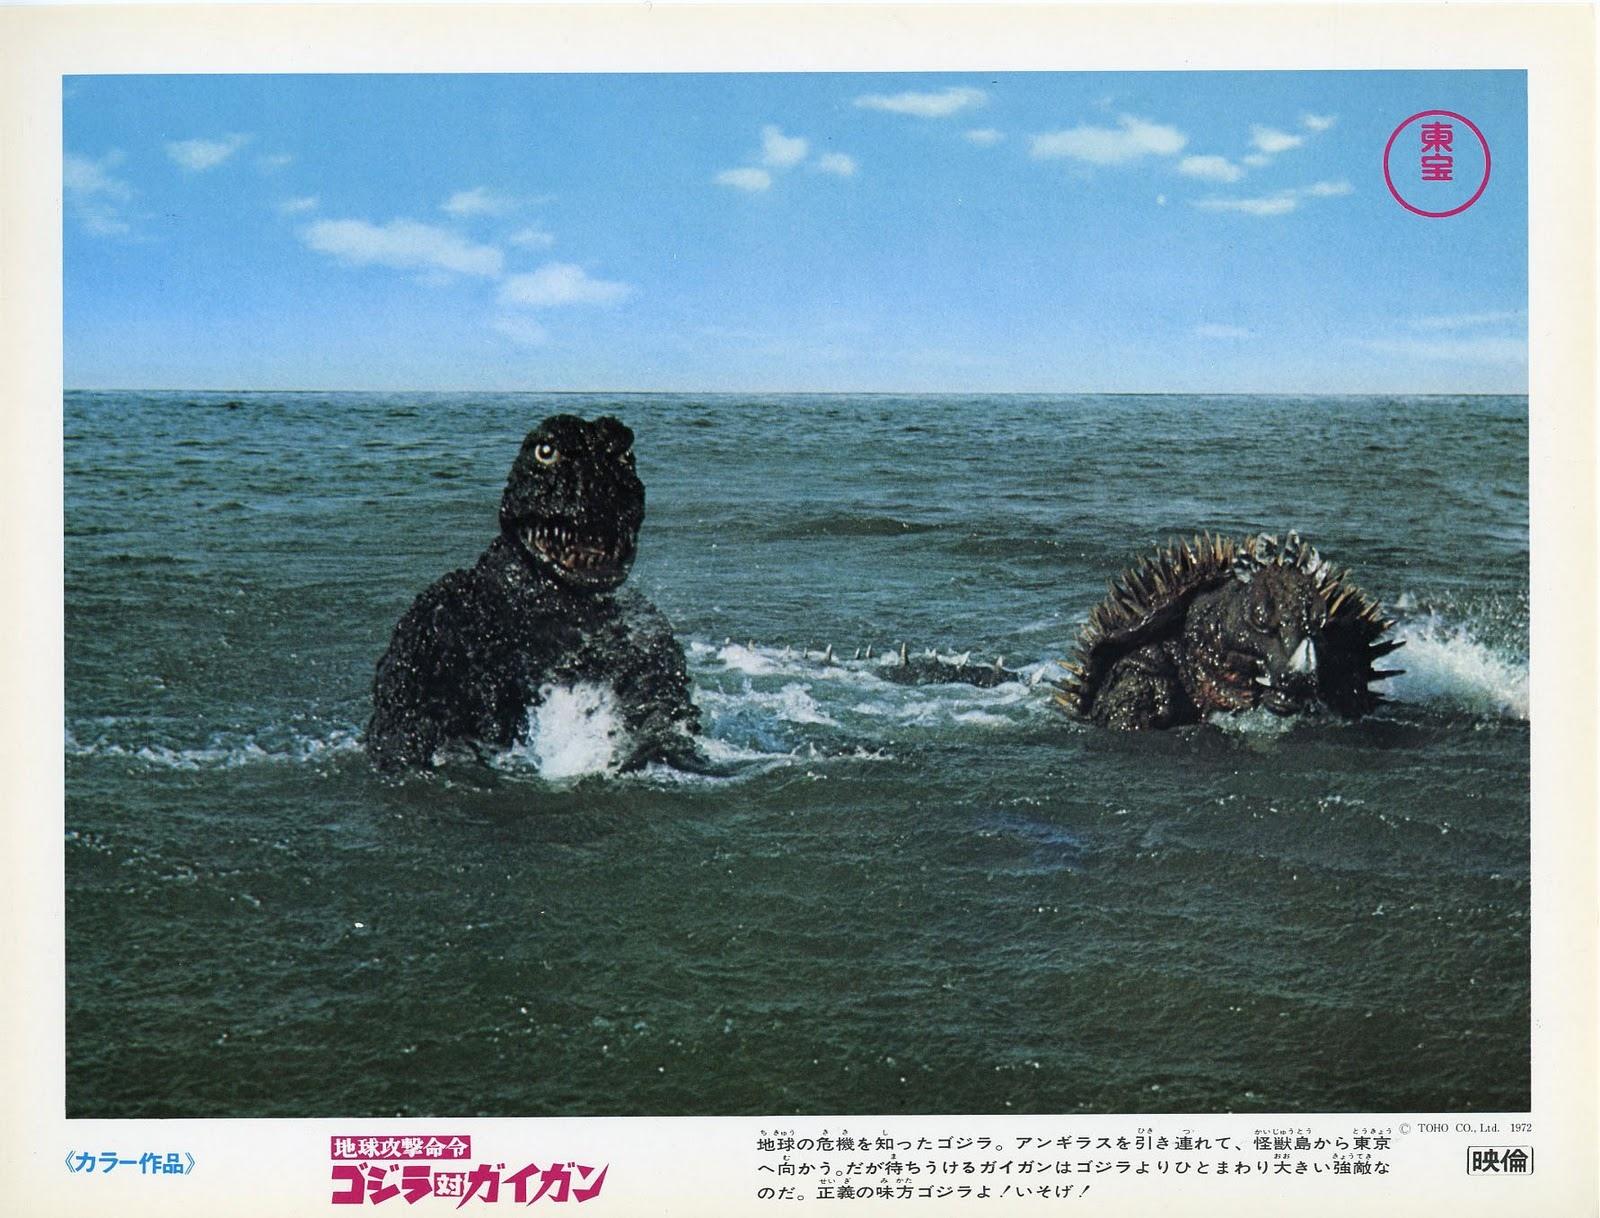 Godzilla Vs. Gigan wallpapers HD quality